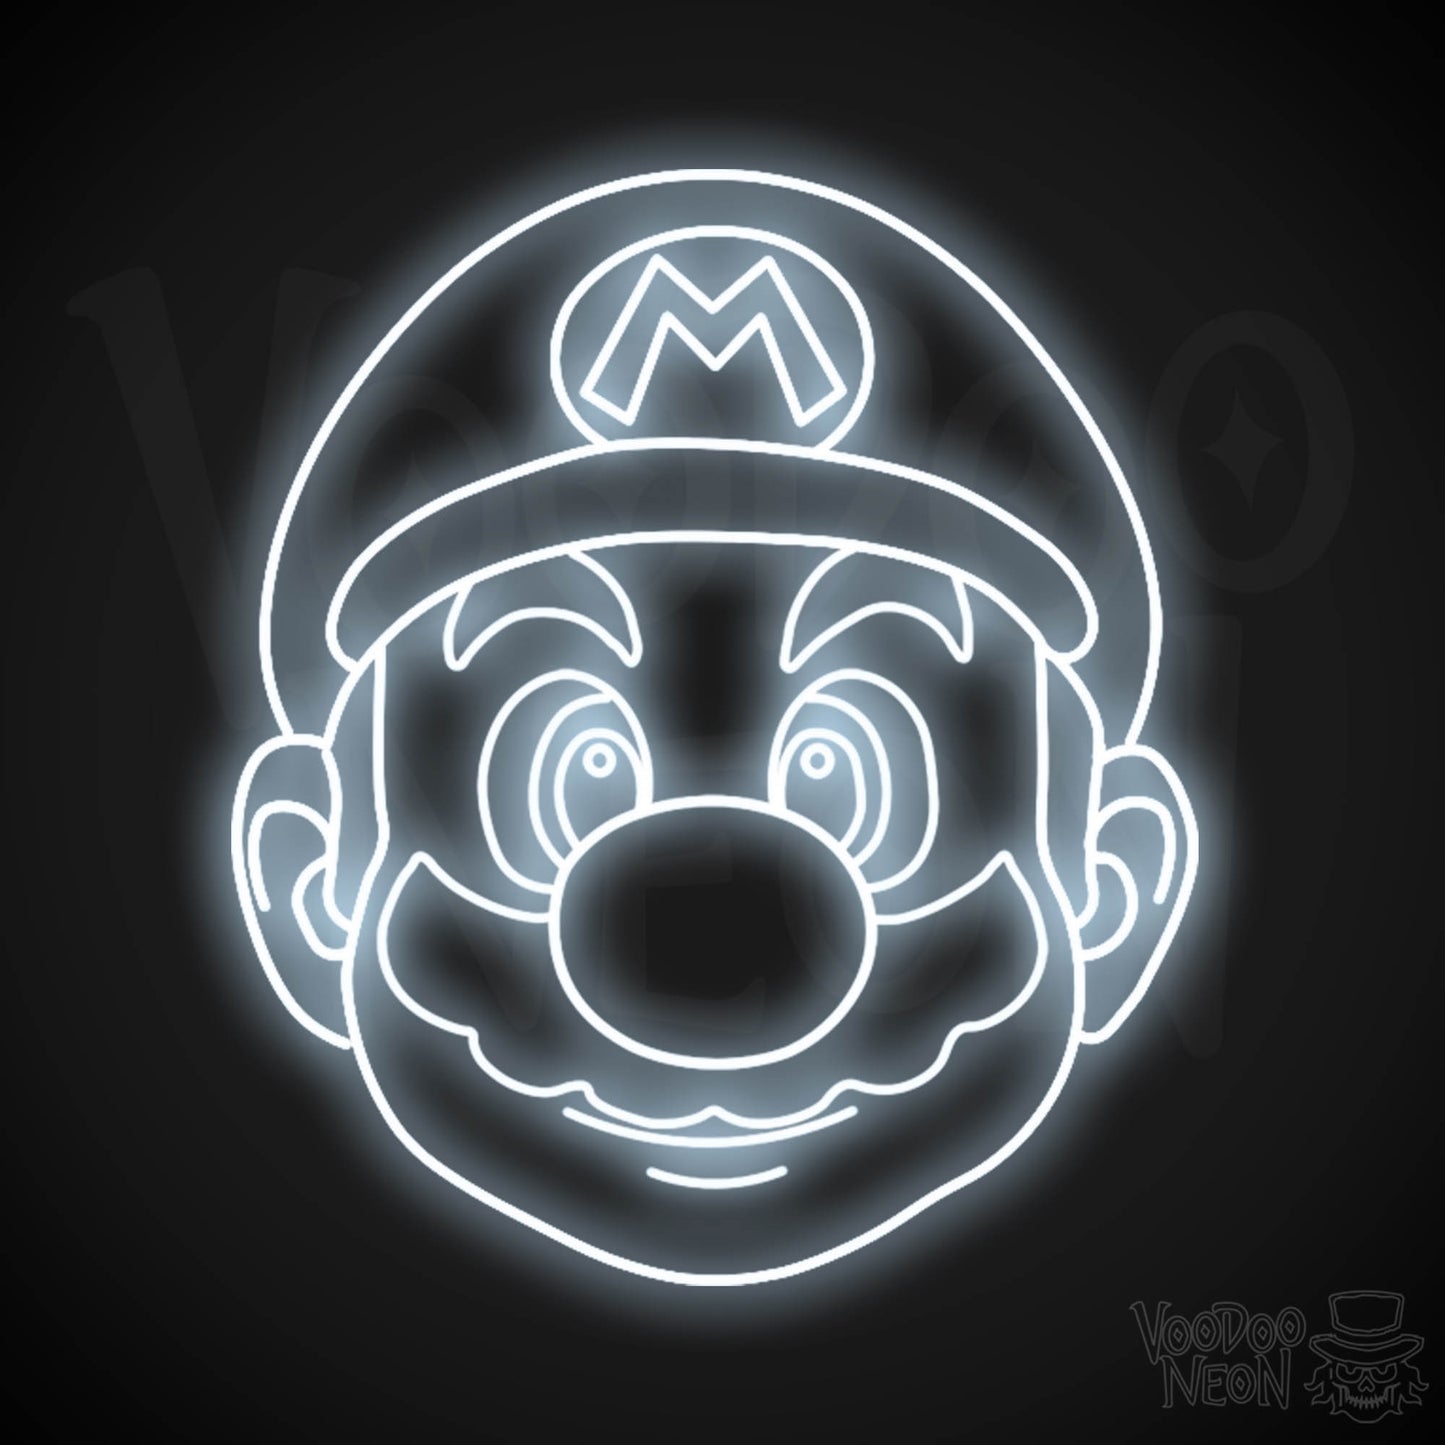 Mario Neon Sign - Mario Sign - Mario Wall Art - LED Neon Wall Art - Color Cool White